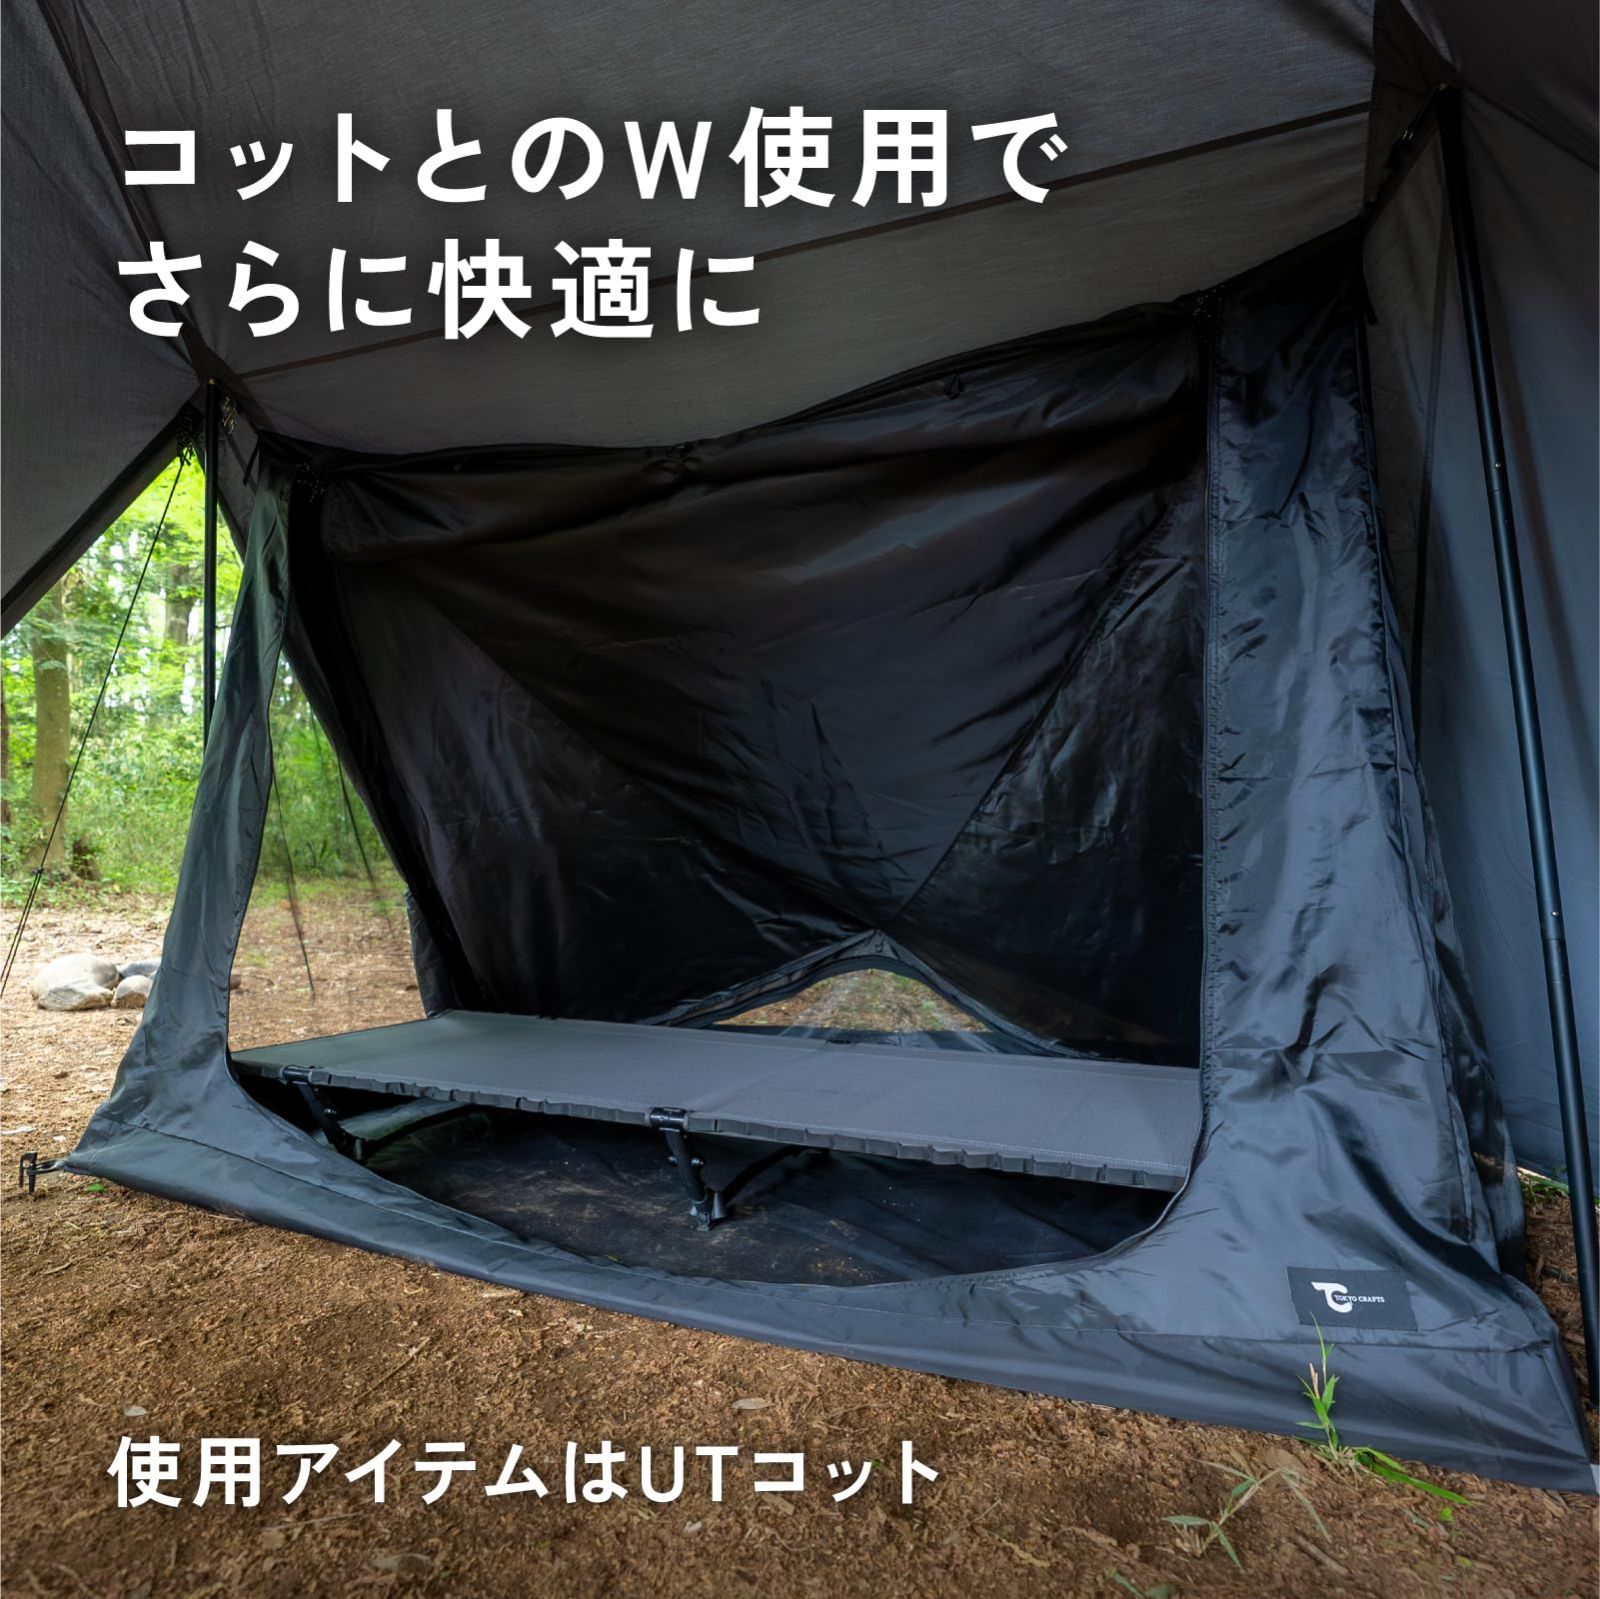 TOKYO CRAFTS ダイヤフォートTCインナーテント ソロキャンプ